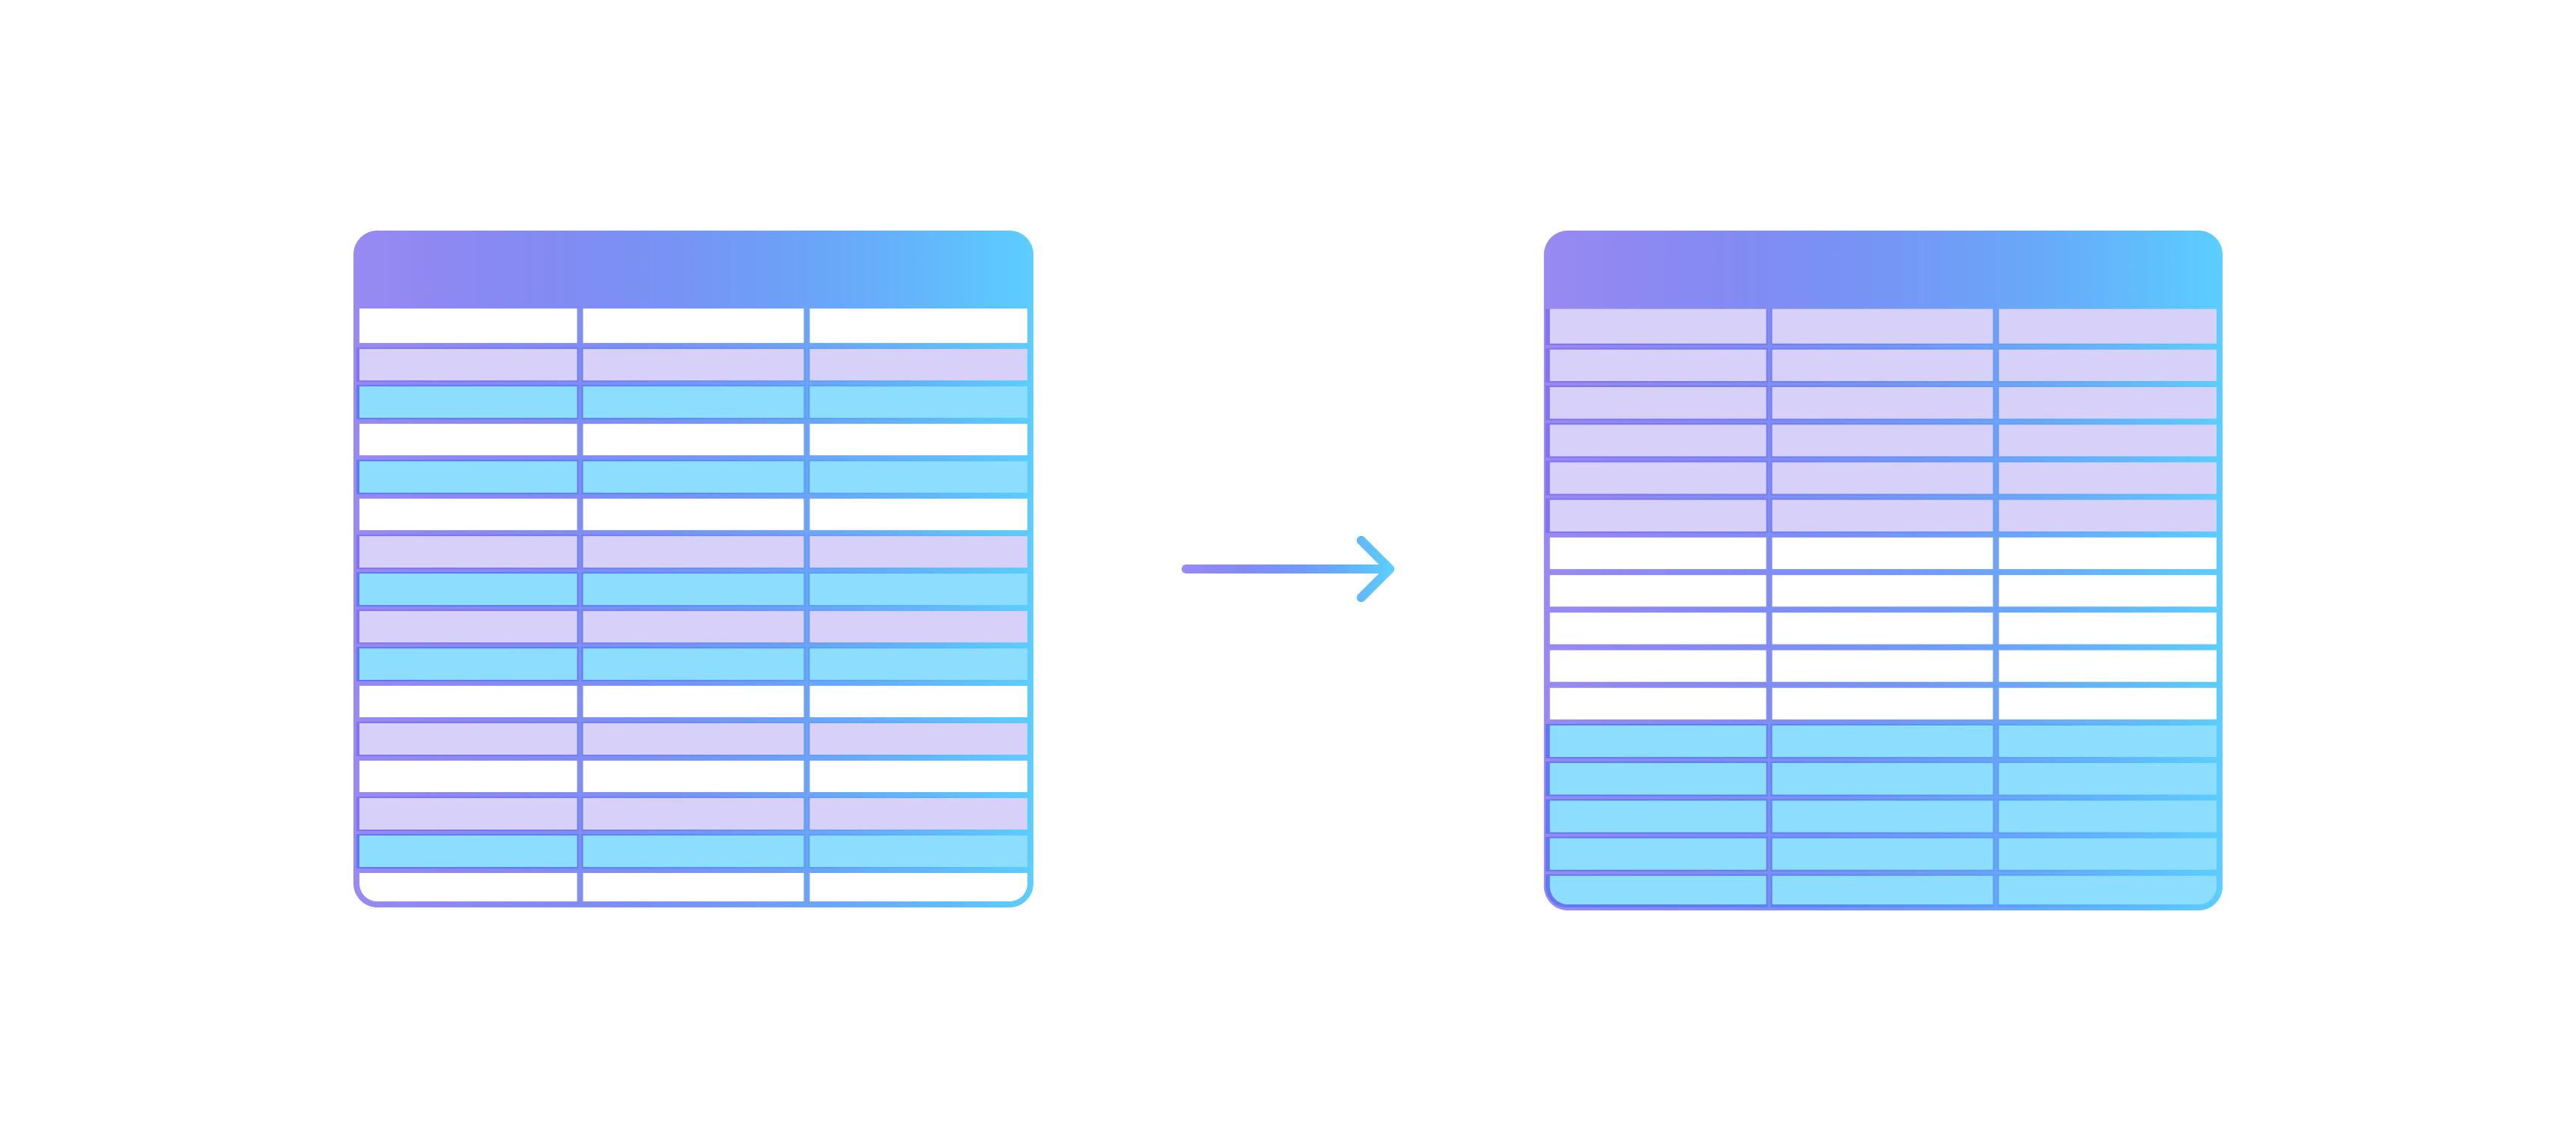 Eine Illustration einer Tabelle mit verschiedenfarbigen Zeilen die zu einer Tabelle wird mit den Zeilen geclustert nach den Farben